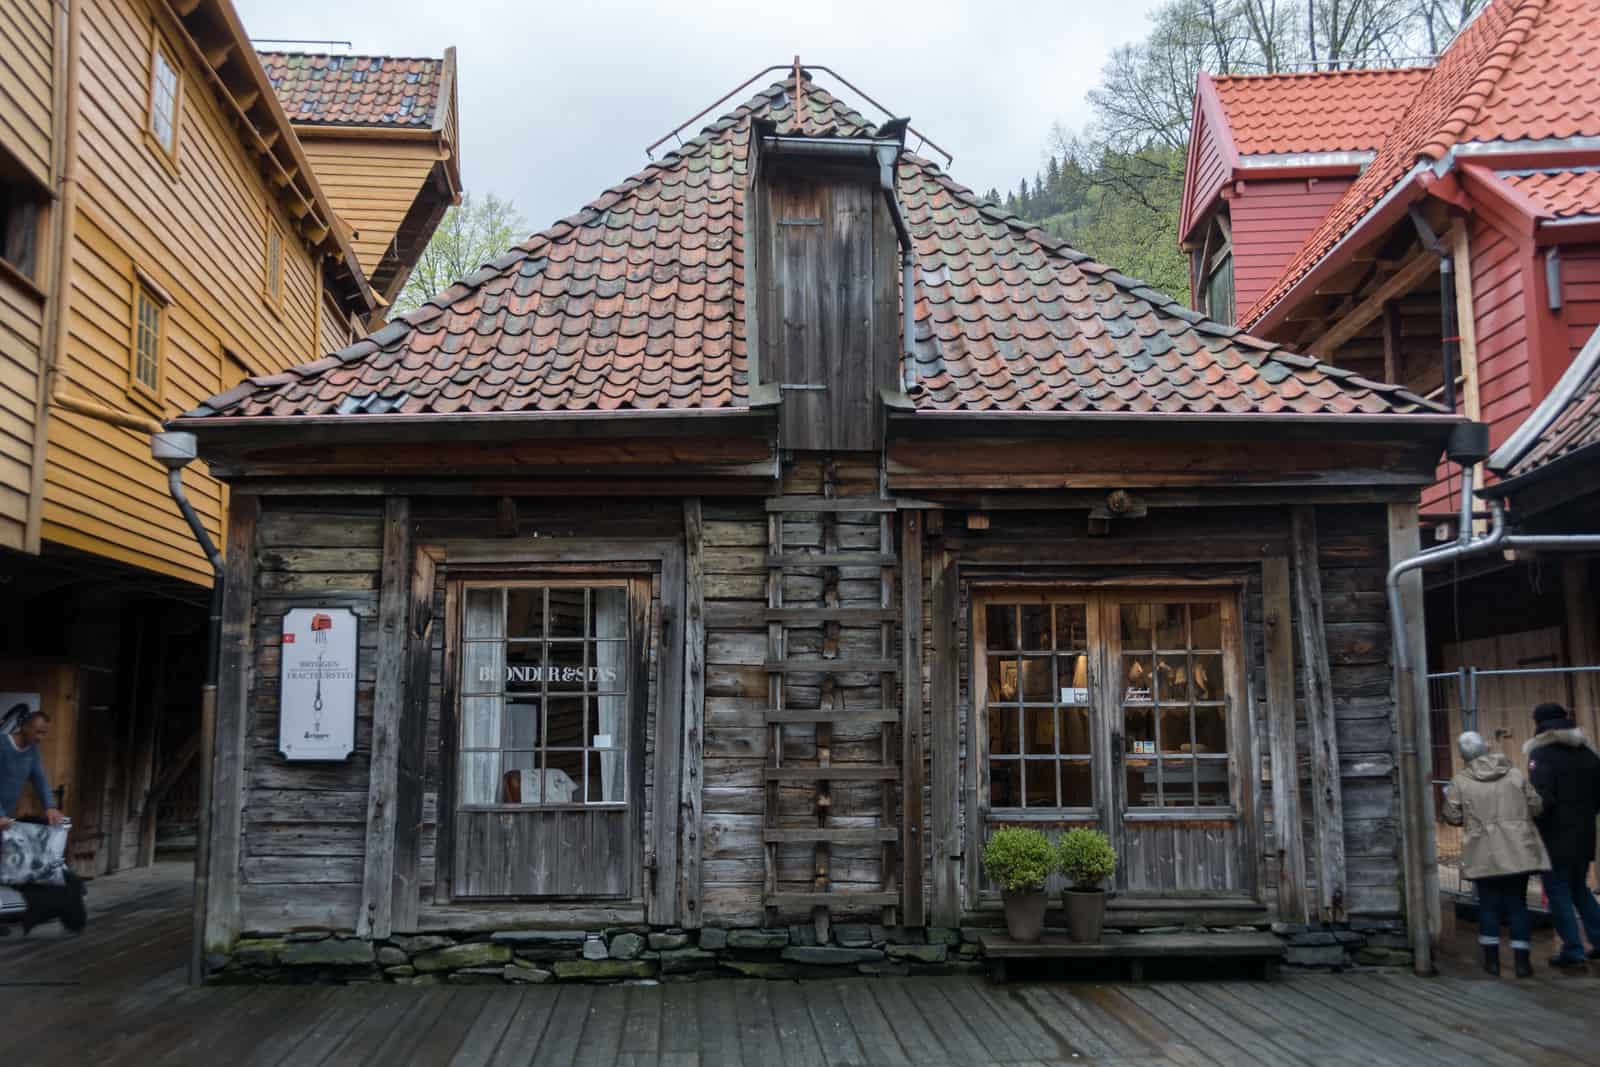 Bergen sightseeing